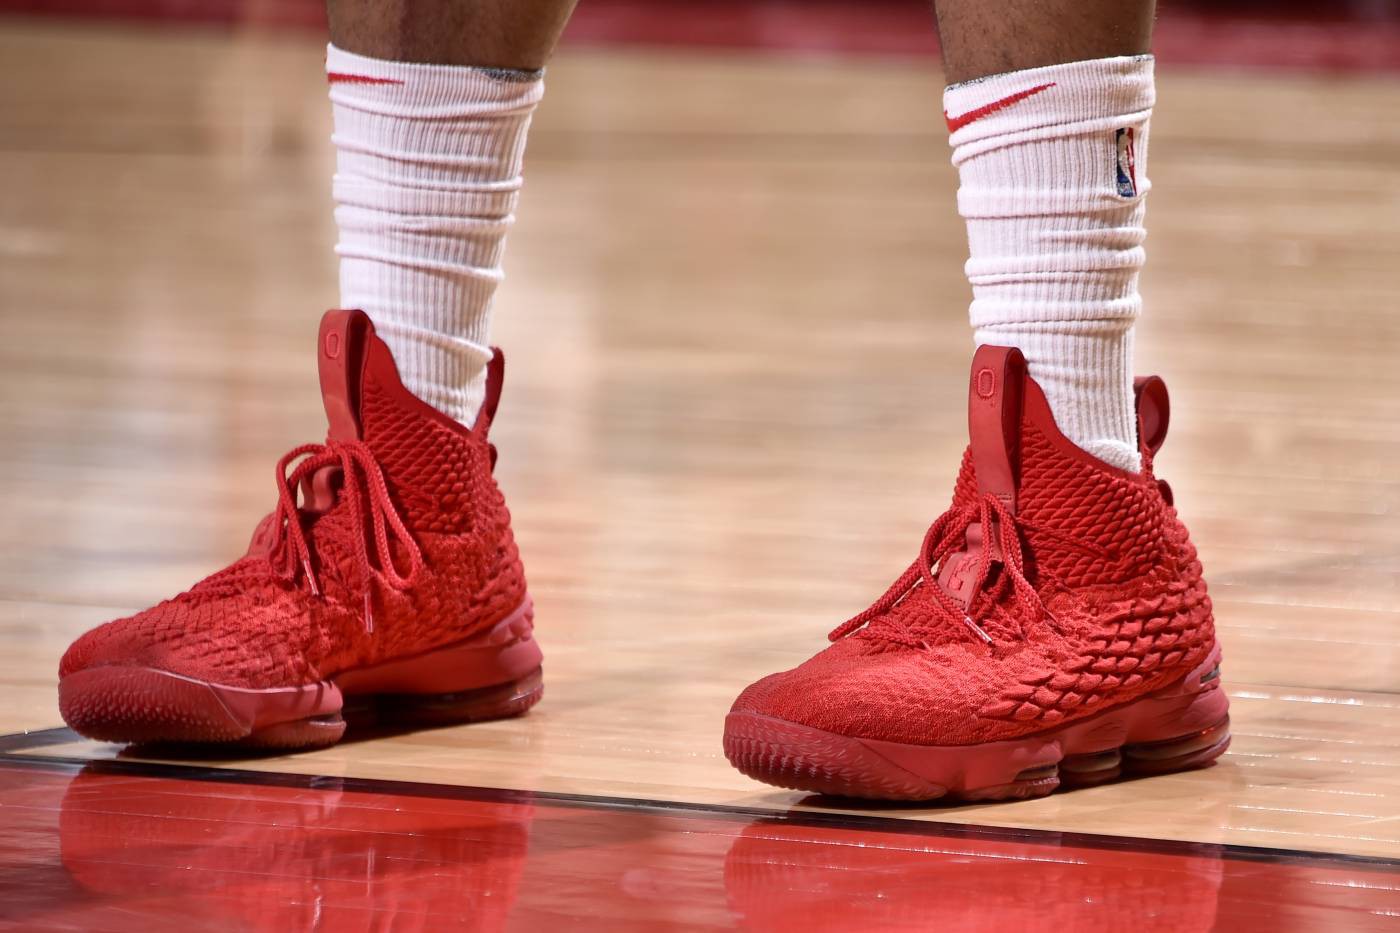 Chi tiết và đầy đủ các mẫu giày khủng của Thánh giày P.J. Tucker đã mang tại NBA Playoffs 2018 - Ảnh 21.